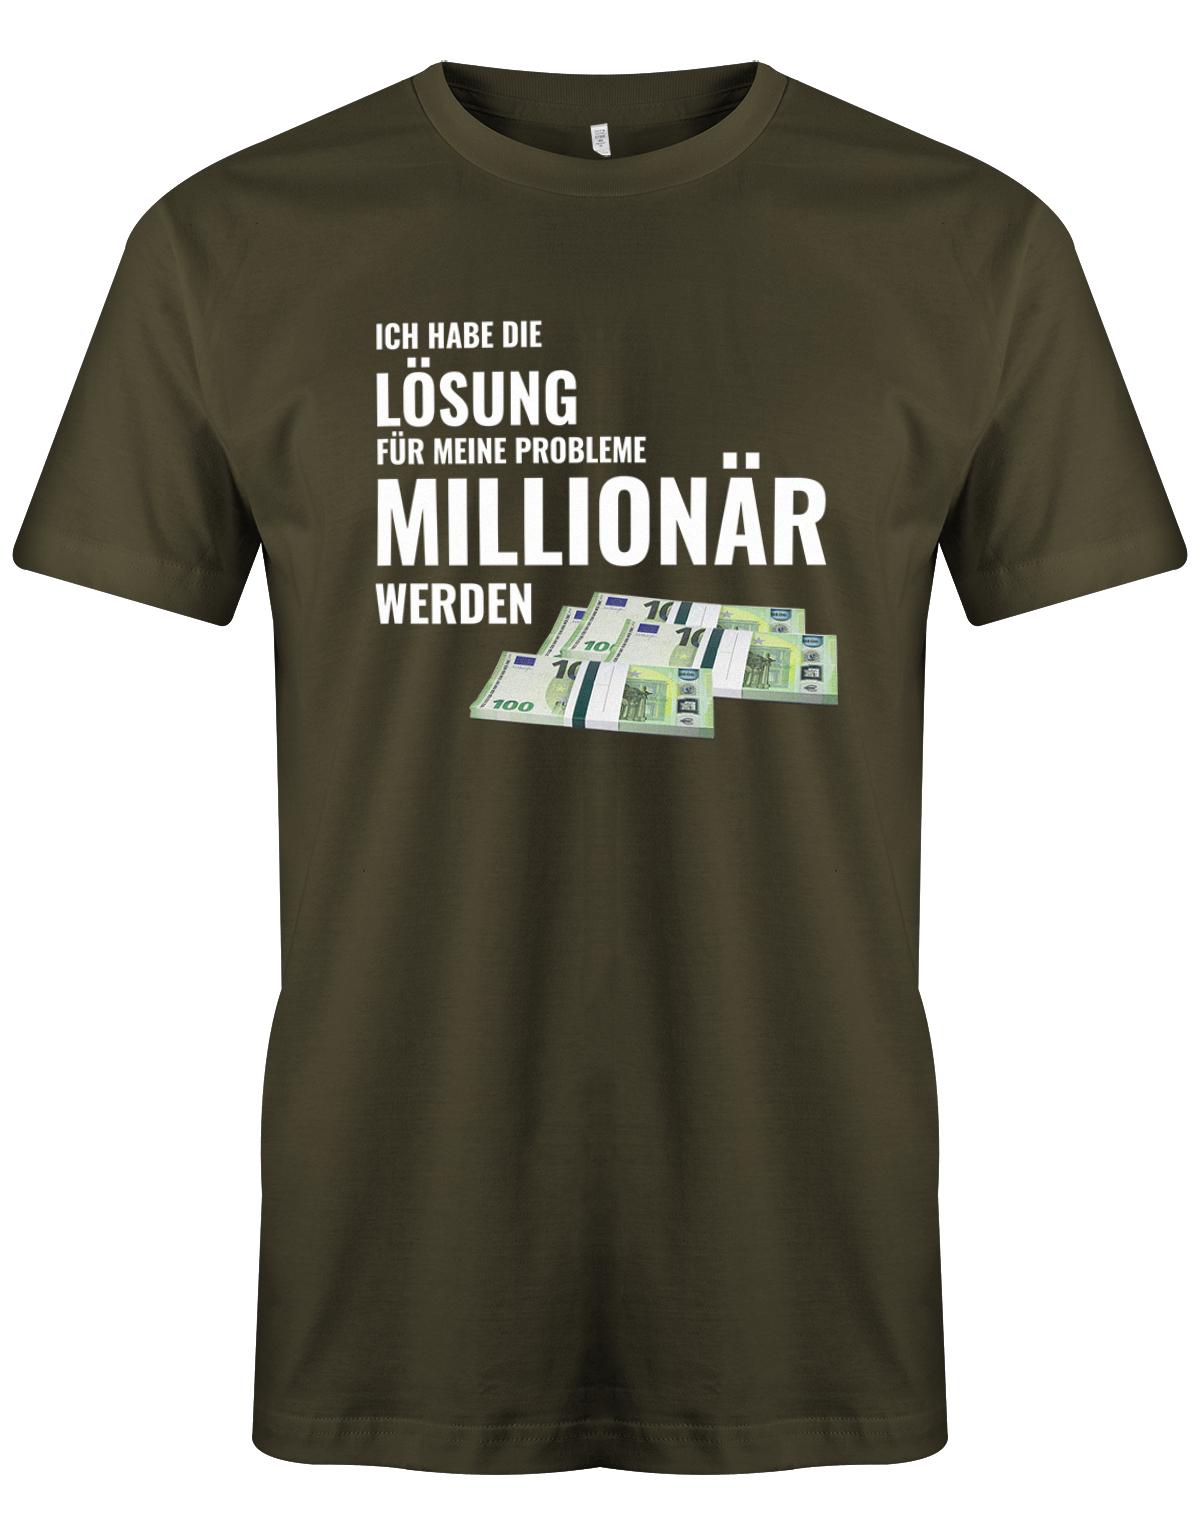 Ich habe die Lösung meiner Probleme - Millionär werden - Herren T-Shirt Army